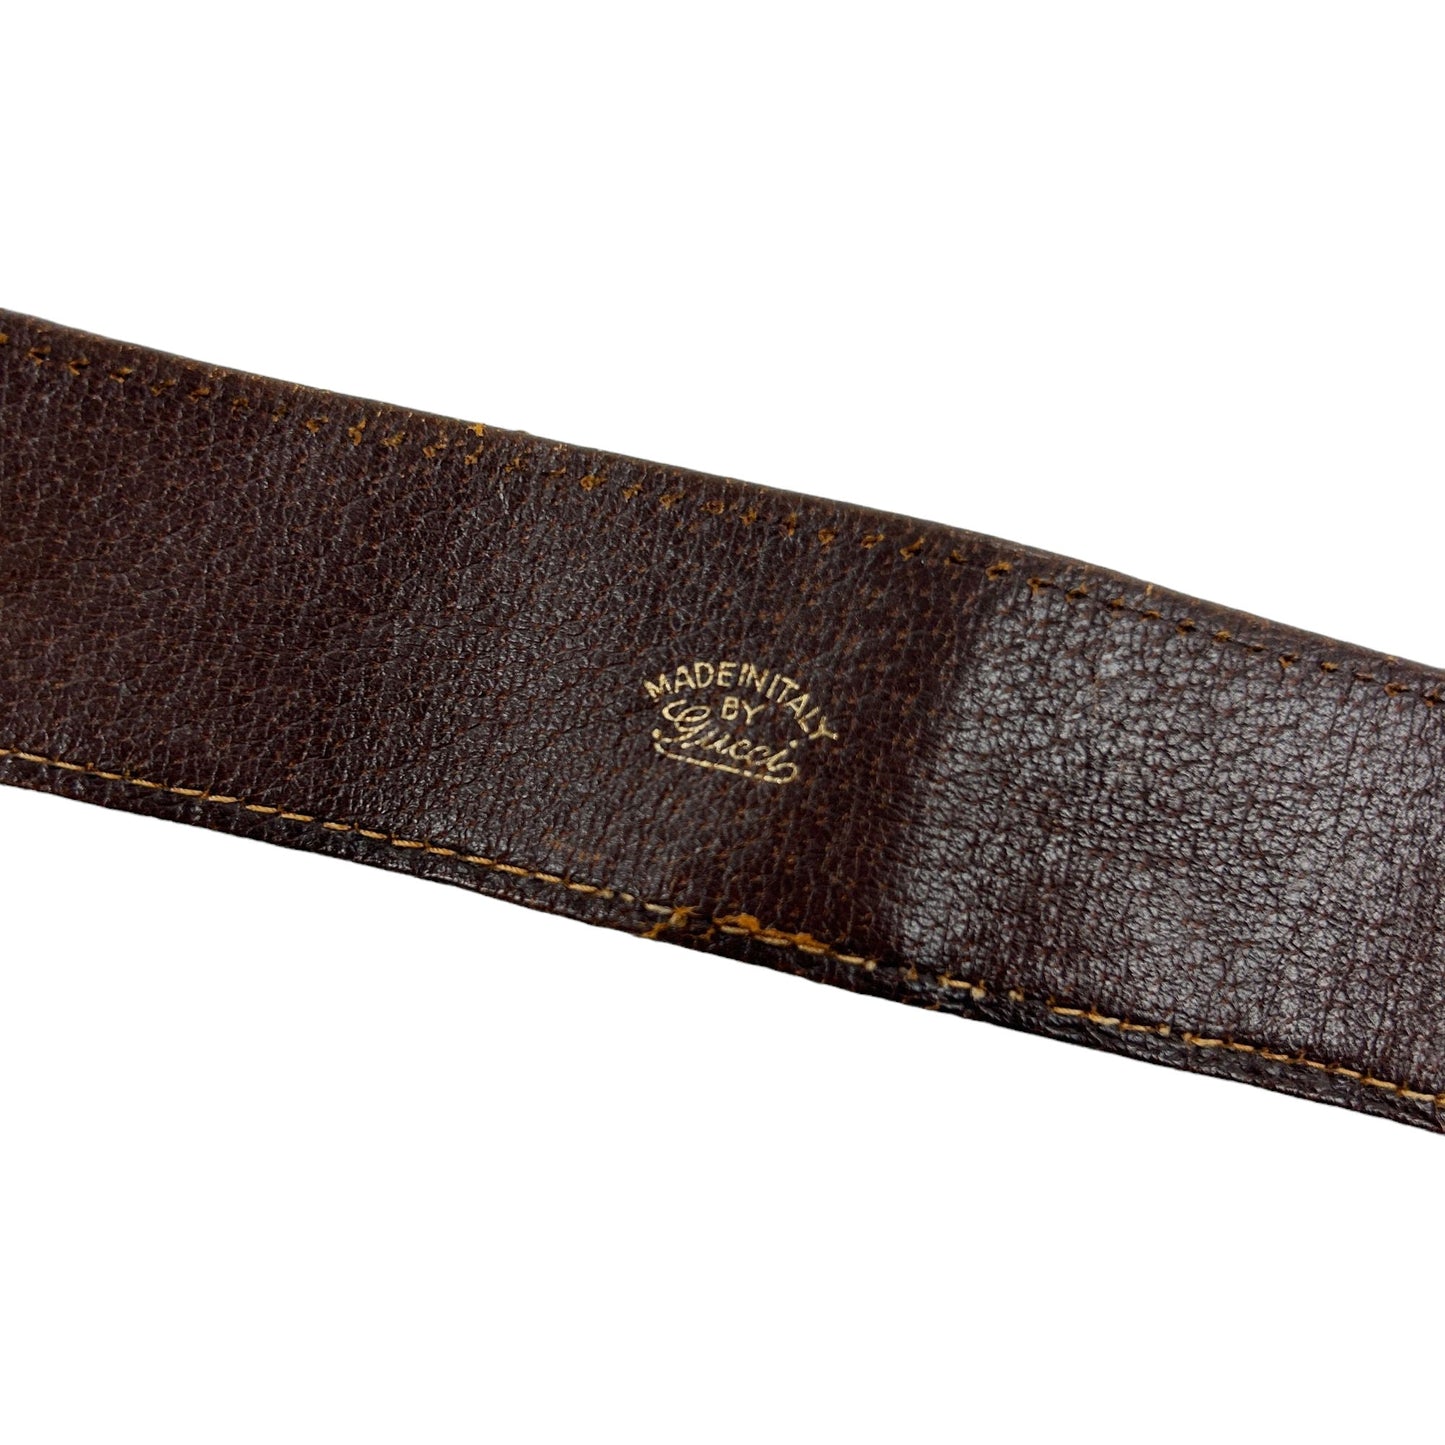 Vintage Gucci Monogram Belt